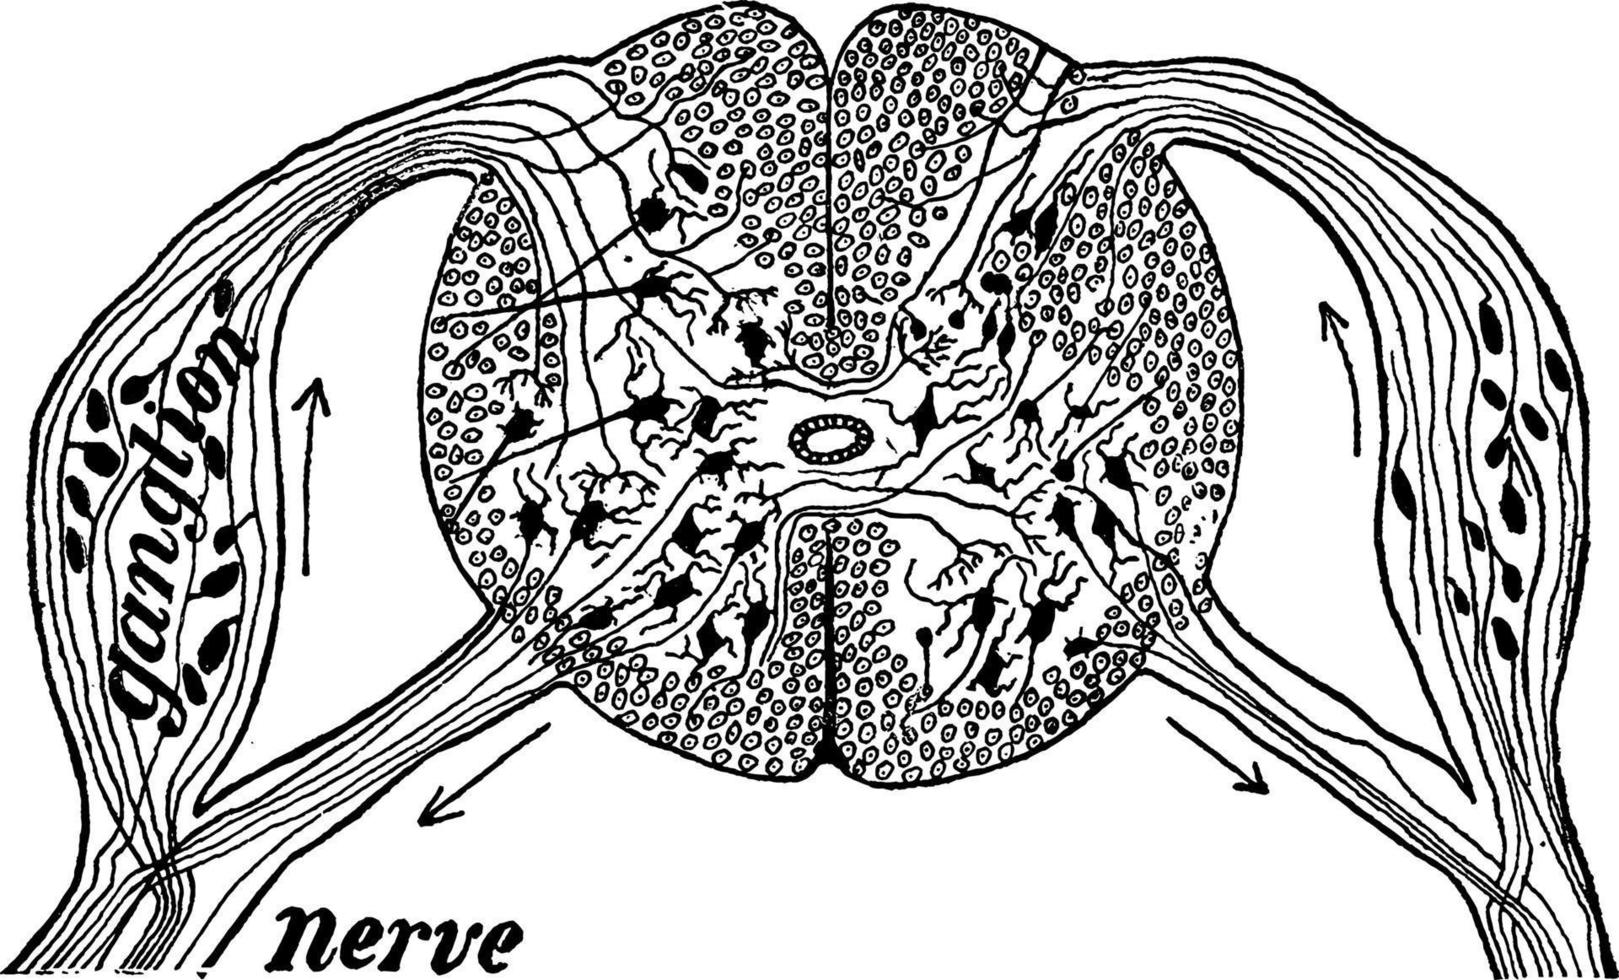 seção da medula espinhal, ilustração vintage vetor